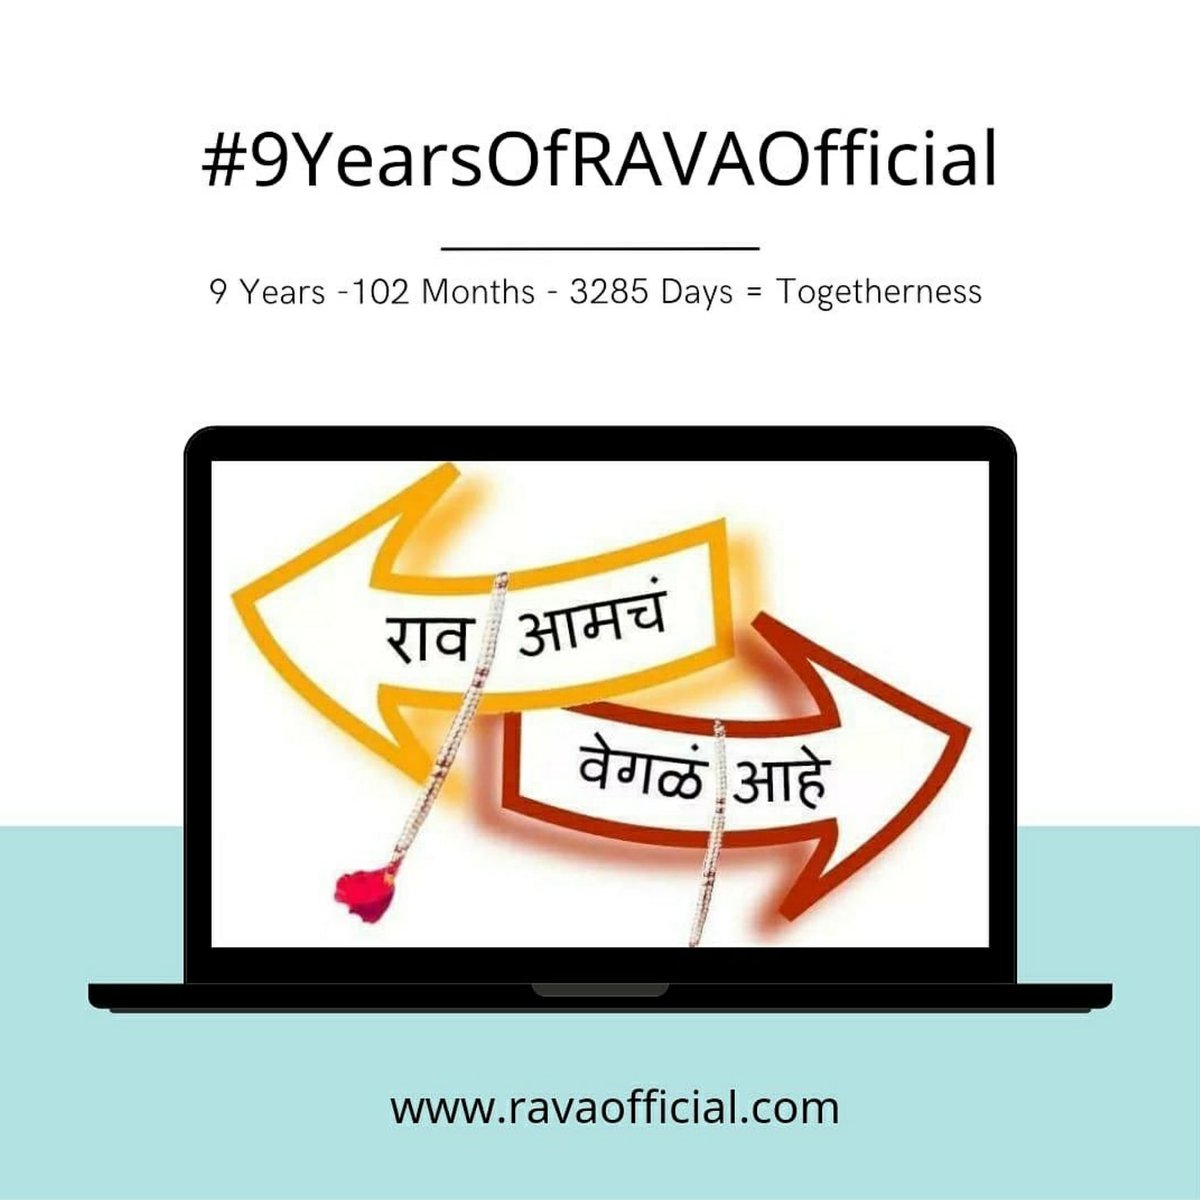 मराठी मनोरंजन विश्वात बहारदार 9 वर्ष पूर्ण केल्याबद्दल ' @RAVA_Official ' तुमचे खूप अभिनंदन! मराठी कलाकार आणि मराठी क्षेत्रात निर्मिलेल्या कलाकृतींना तुम्ही कायम support आणि promote करत आलात.. तुमच्या पुढील यशस्वी वाटचालीसाठी खूप शुभेच्छा!! #9YearsOfRAVAOfficial #BestWishes